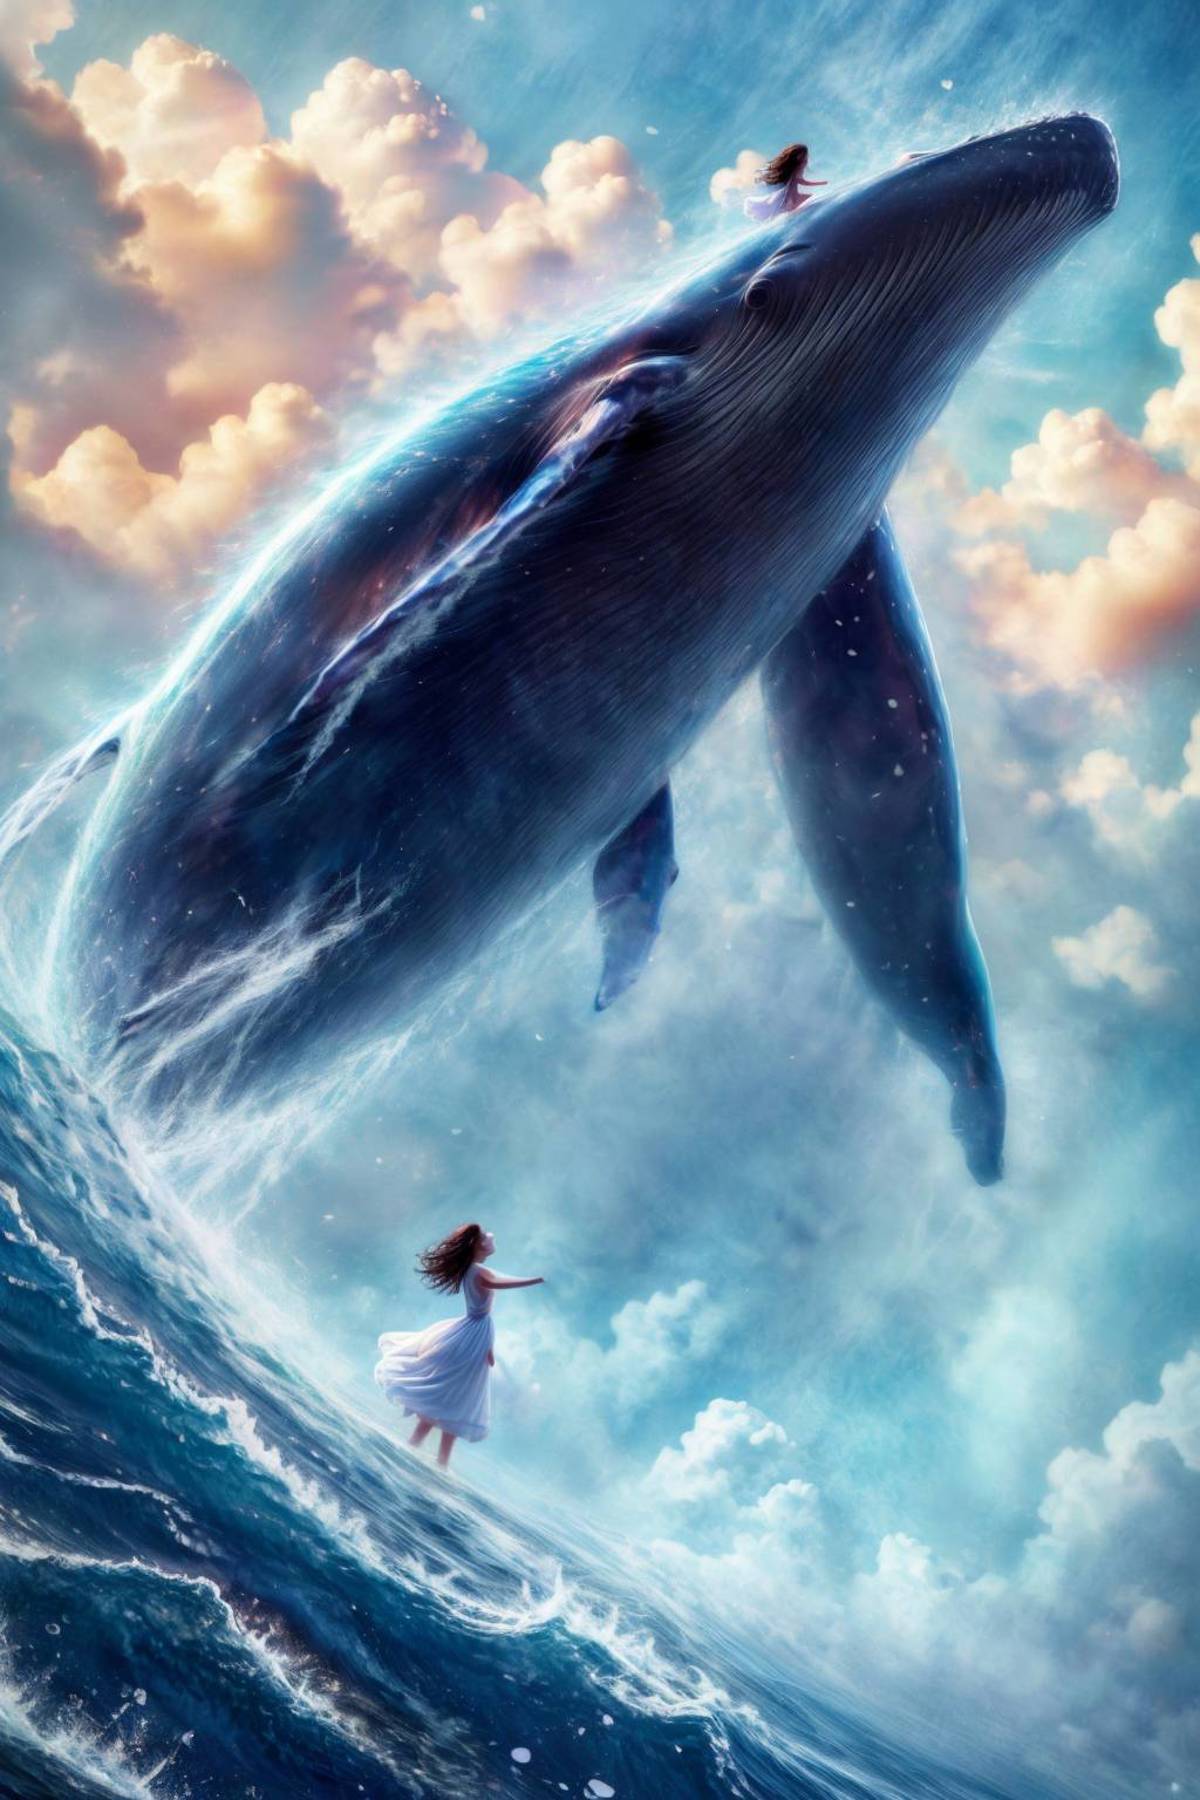 绪儿-飞鲸鱼 xuer Big whale image by slime77744784